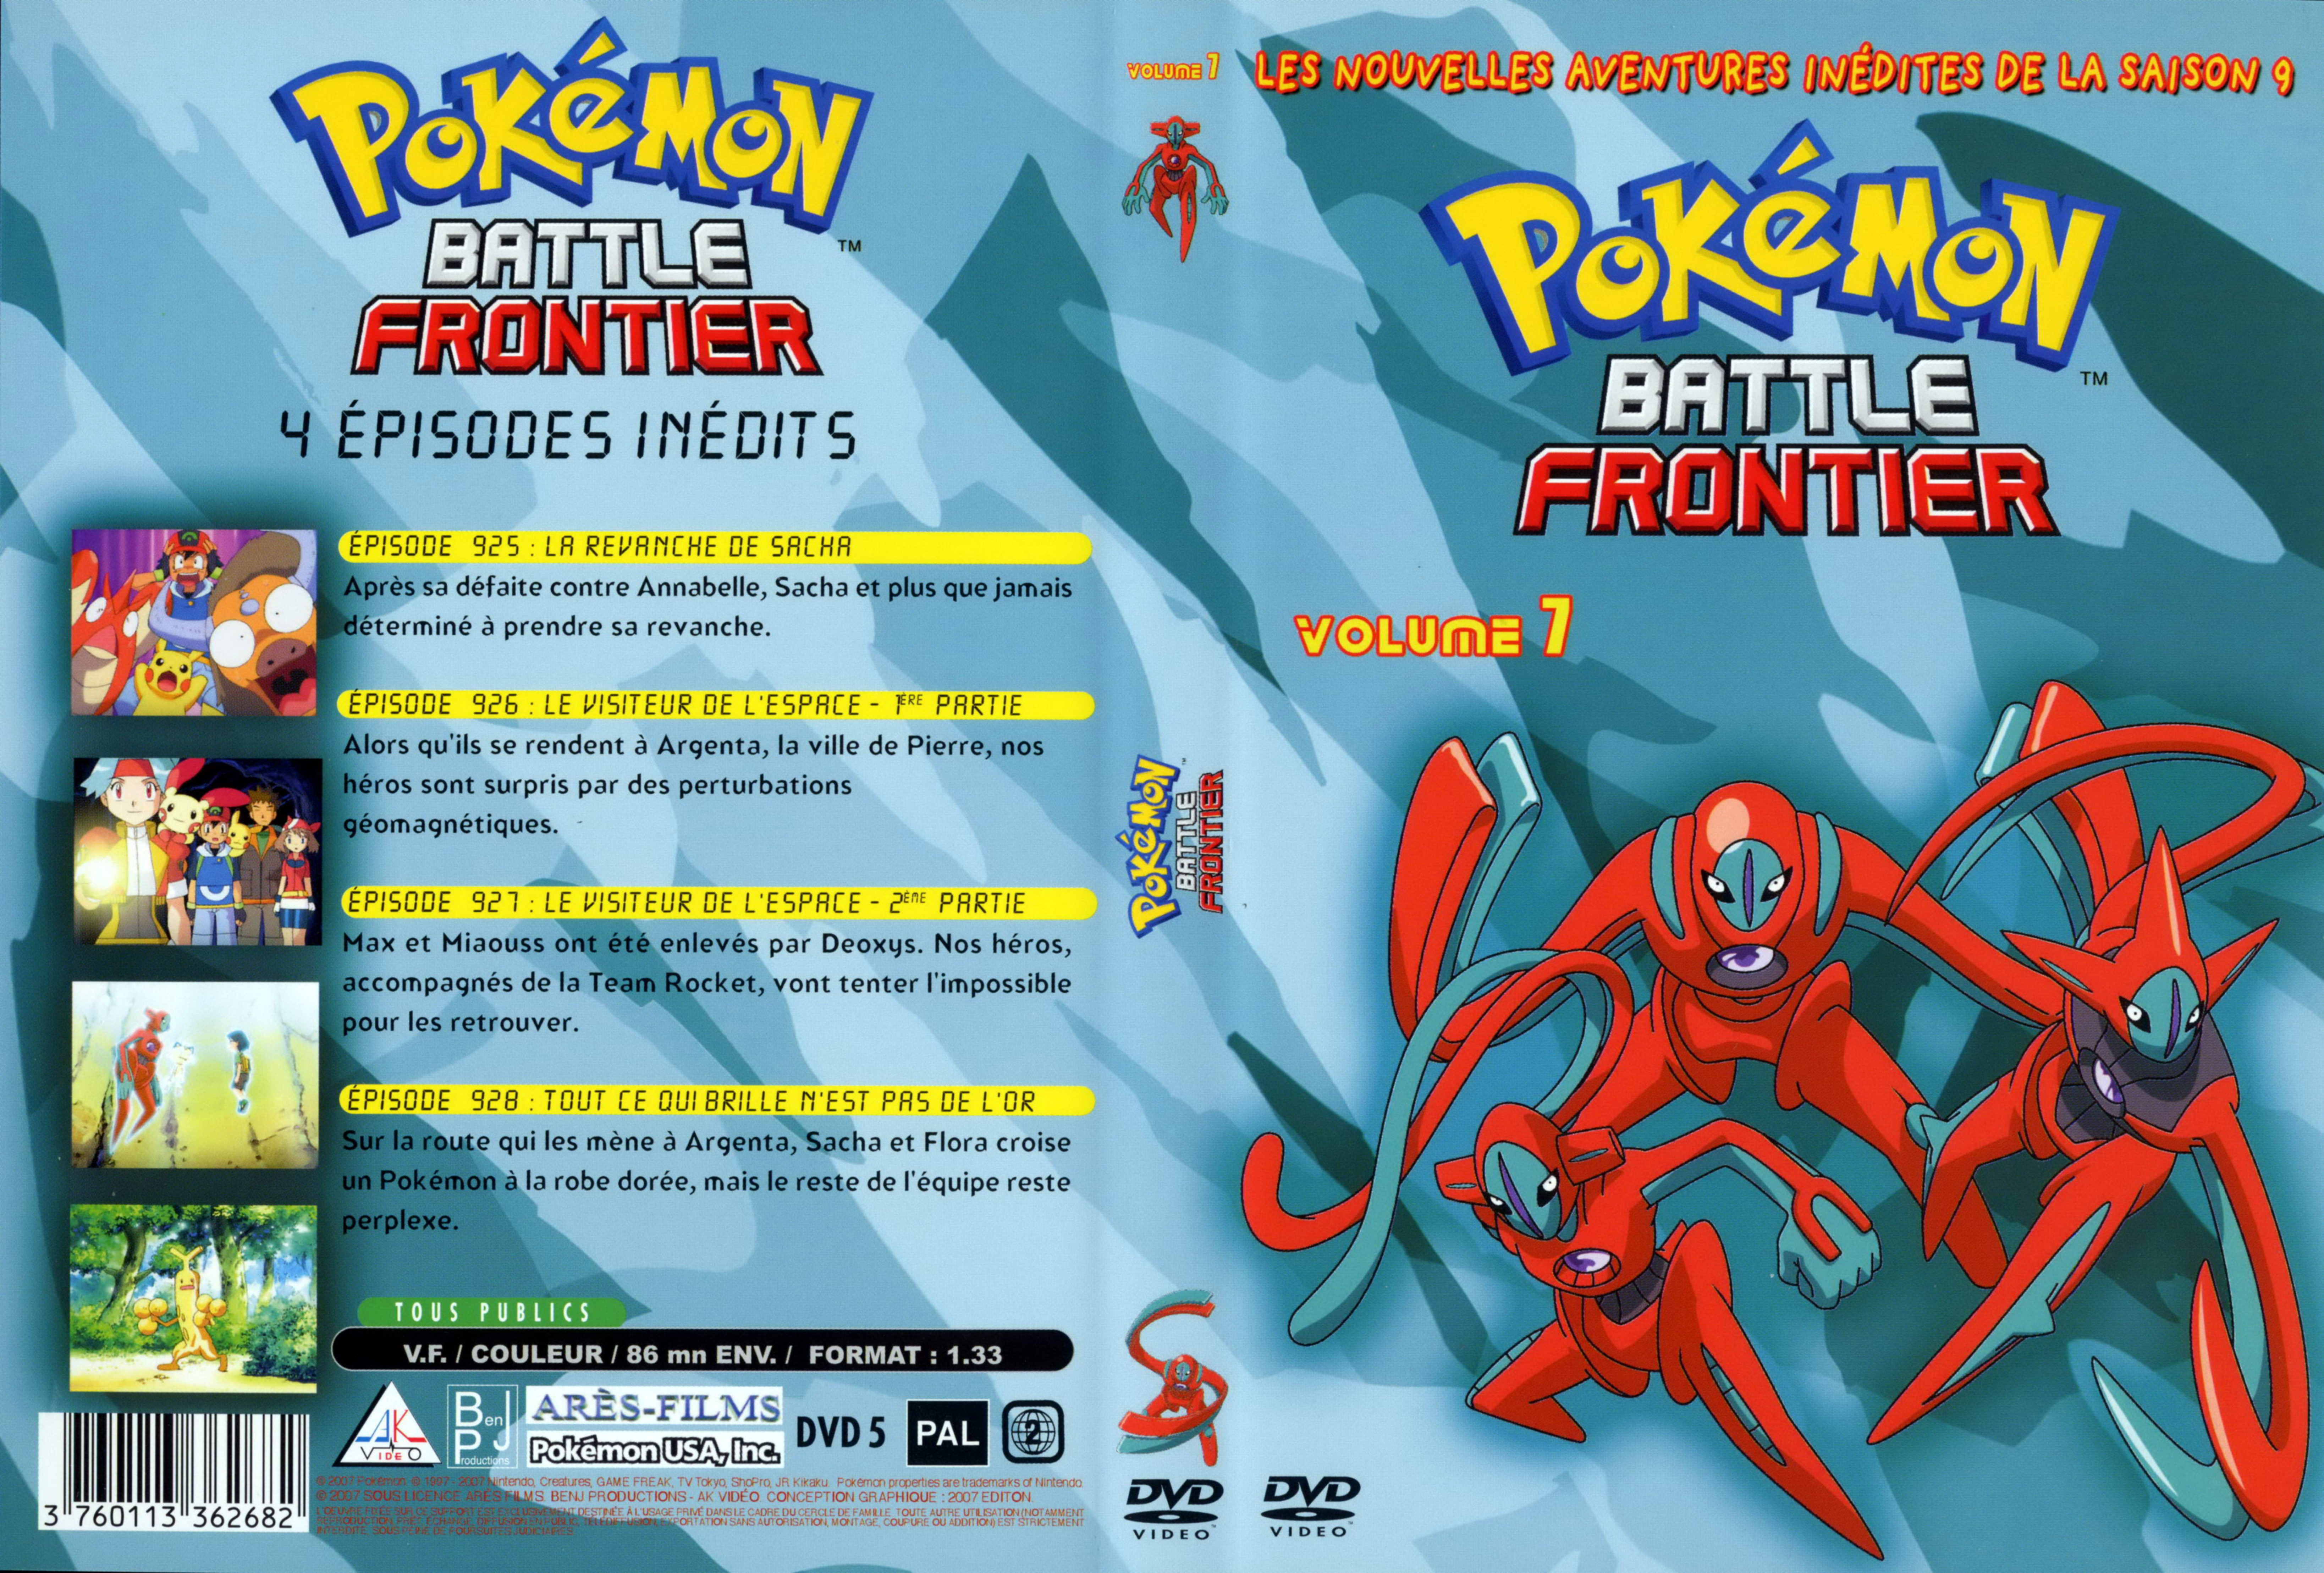 Jaquette DVD Pokemon battle frontier Saison 09 DVD 7